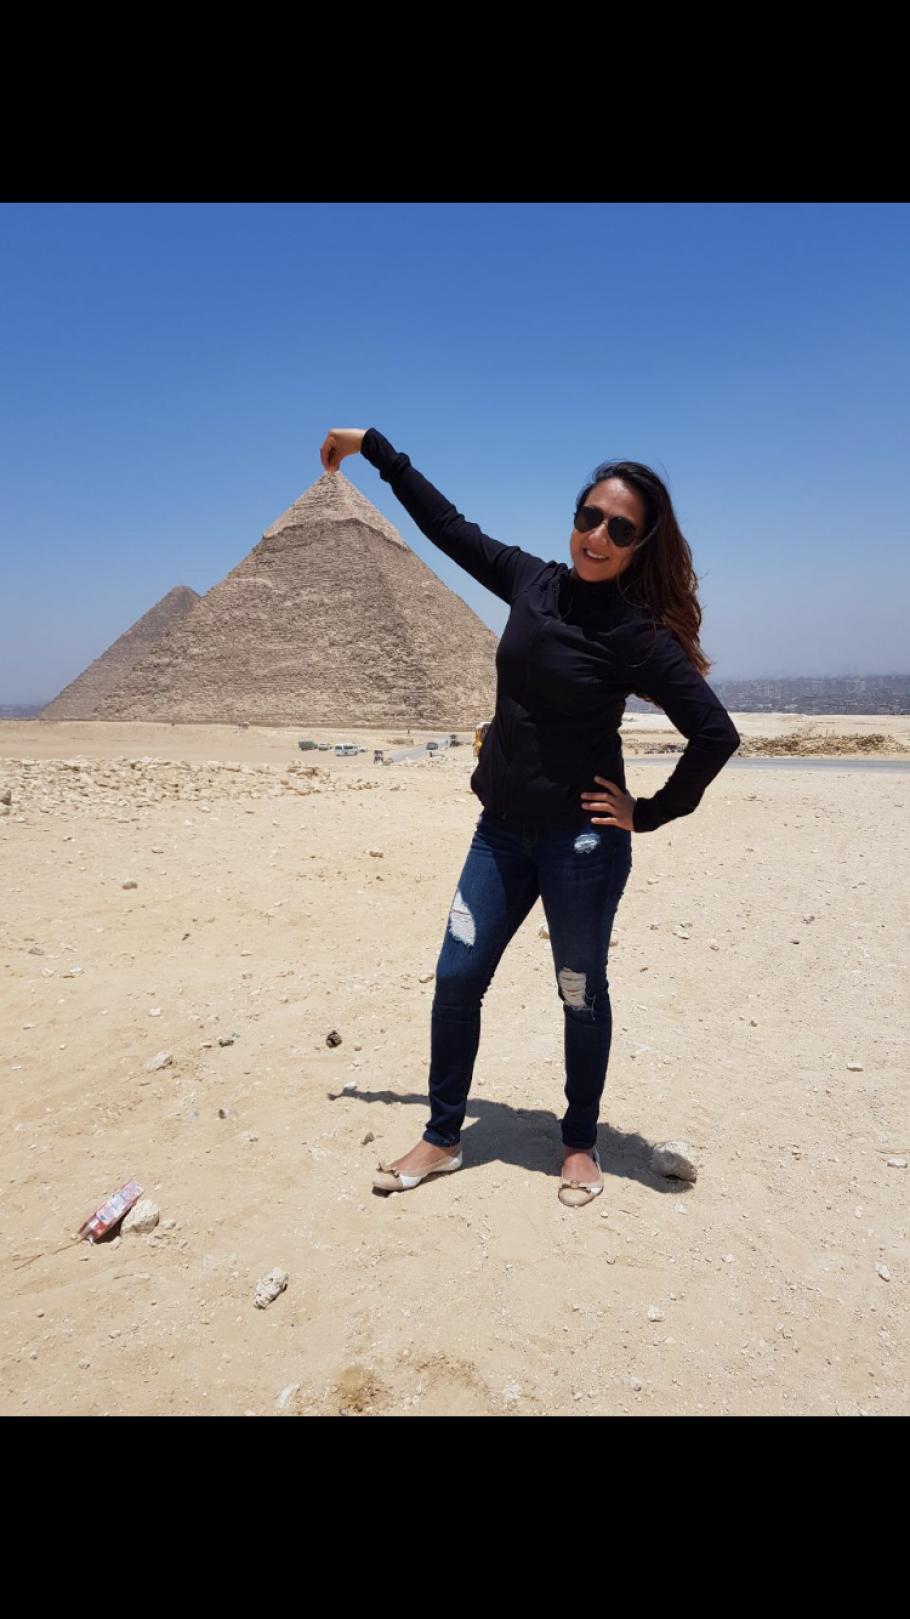 Shaesta Waiz in Egypt during her solo flight around the world. 